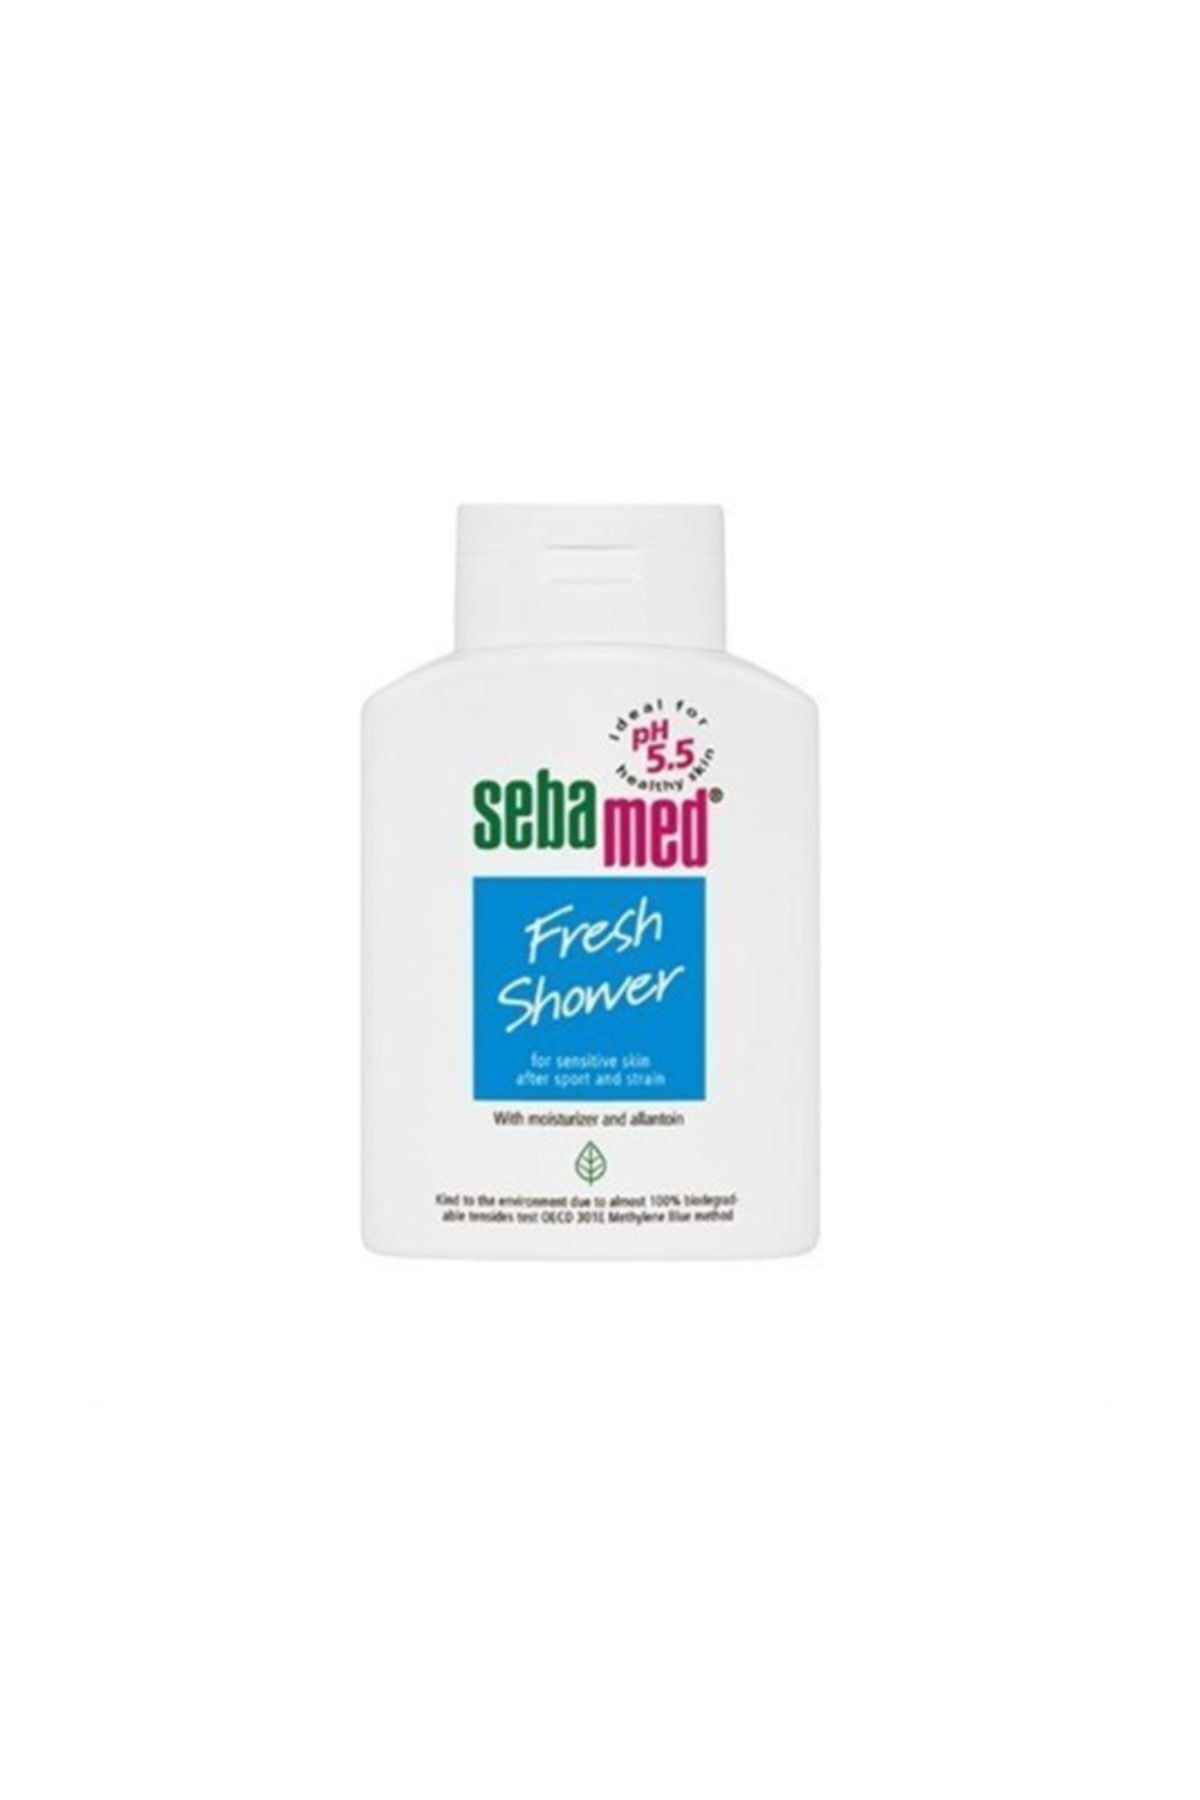 Sebamed Ferahlatıcı Duş Jeli - Fresh Shower 200 ml